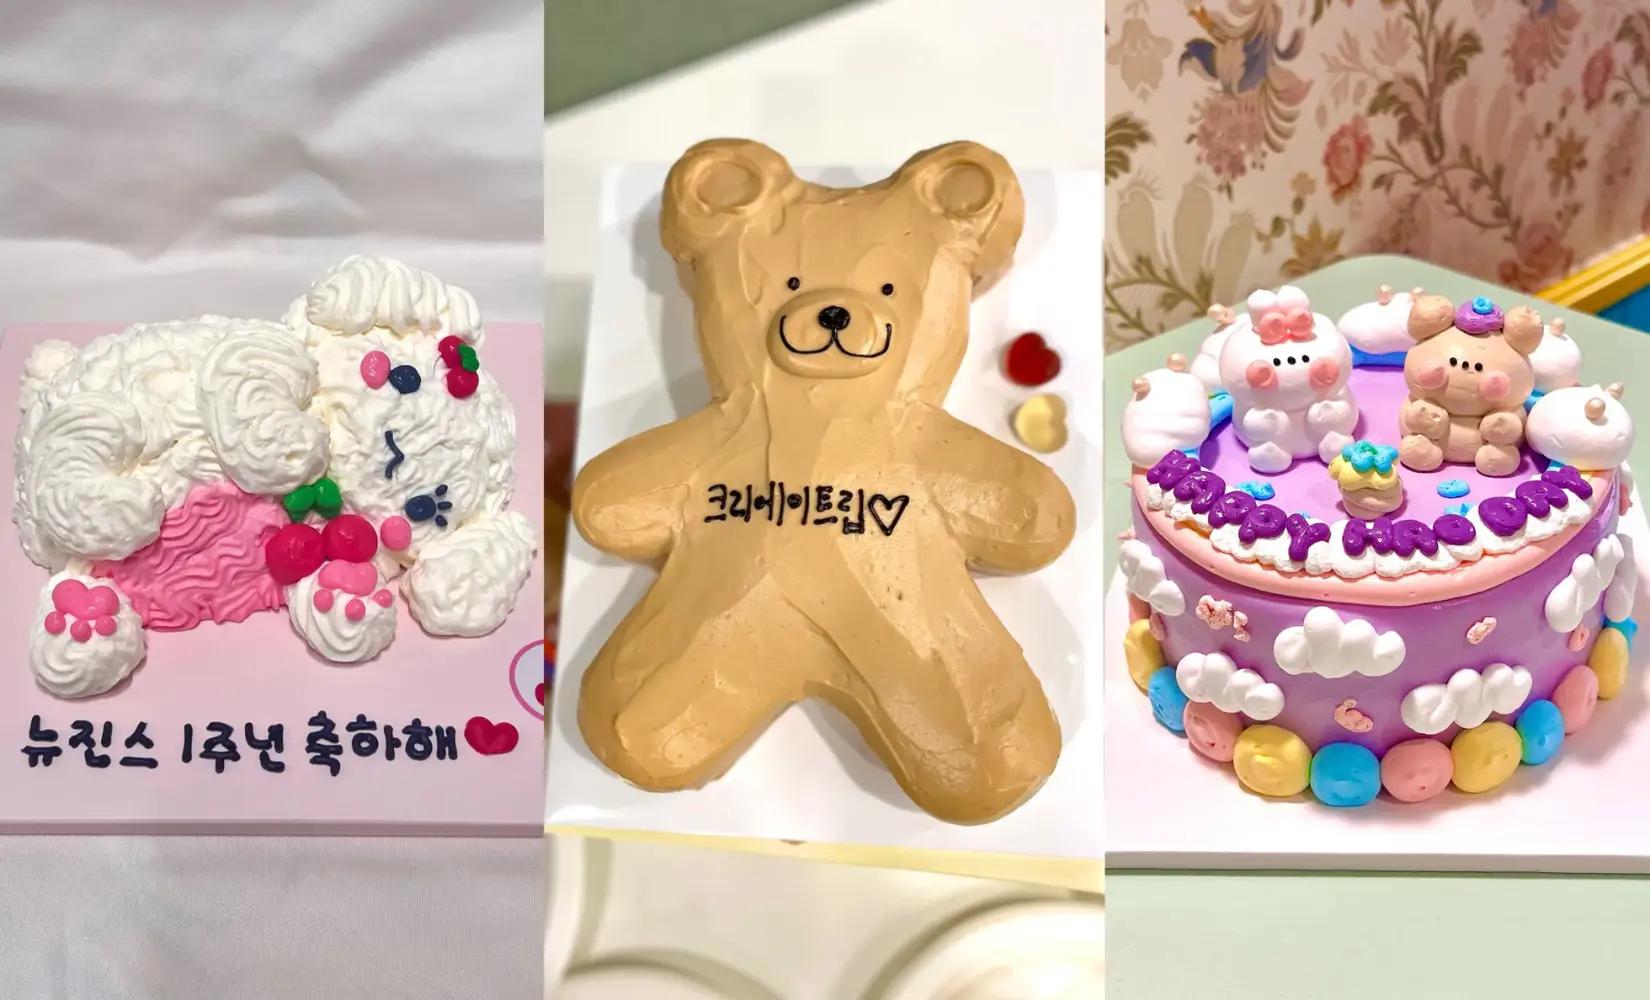 Top 5 Custom Cake Brands in Korea